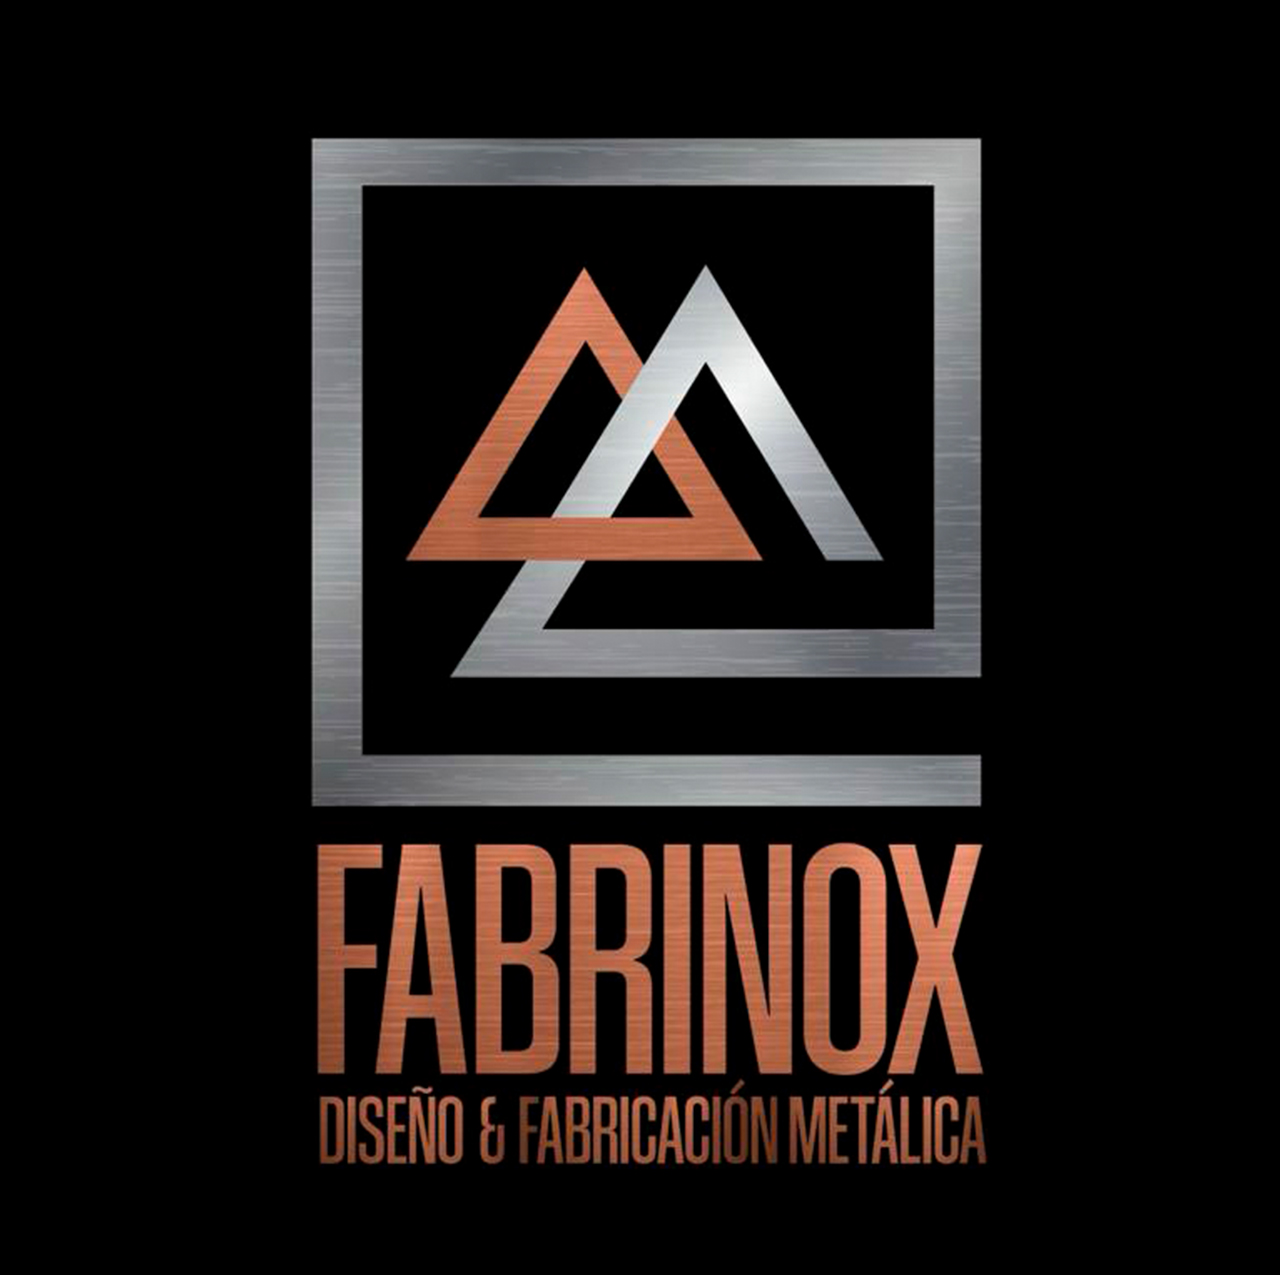 Fabrinox